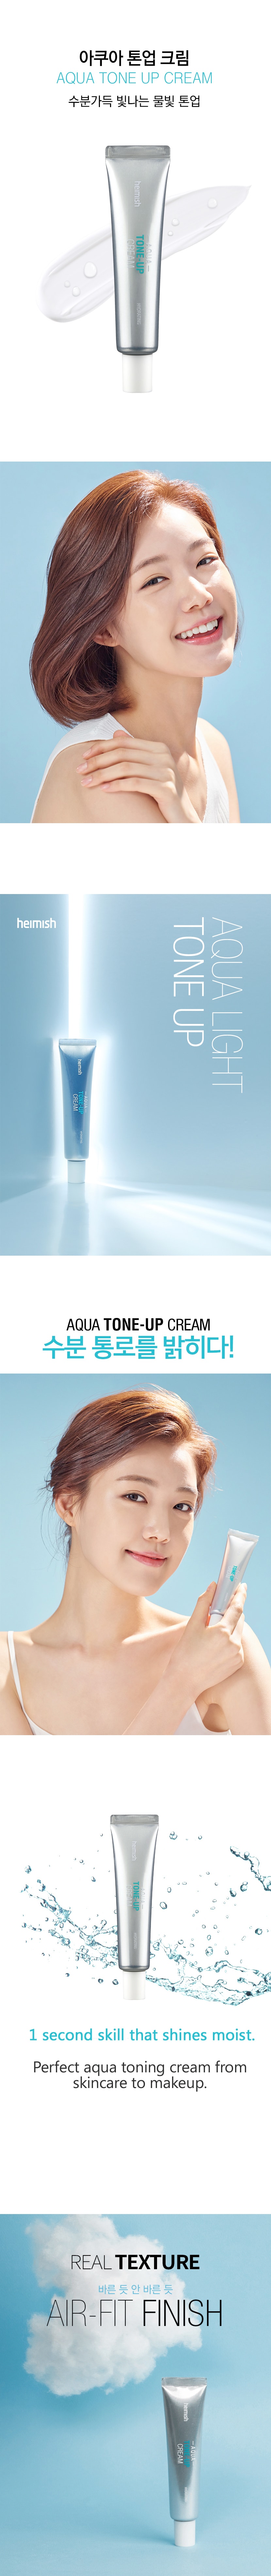 Aqua Tone-Up Cream 80g